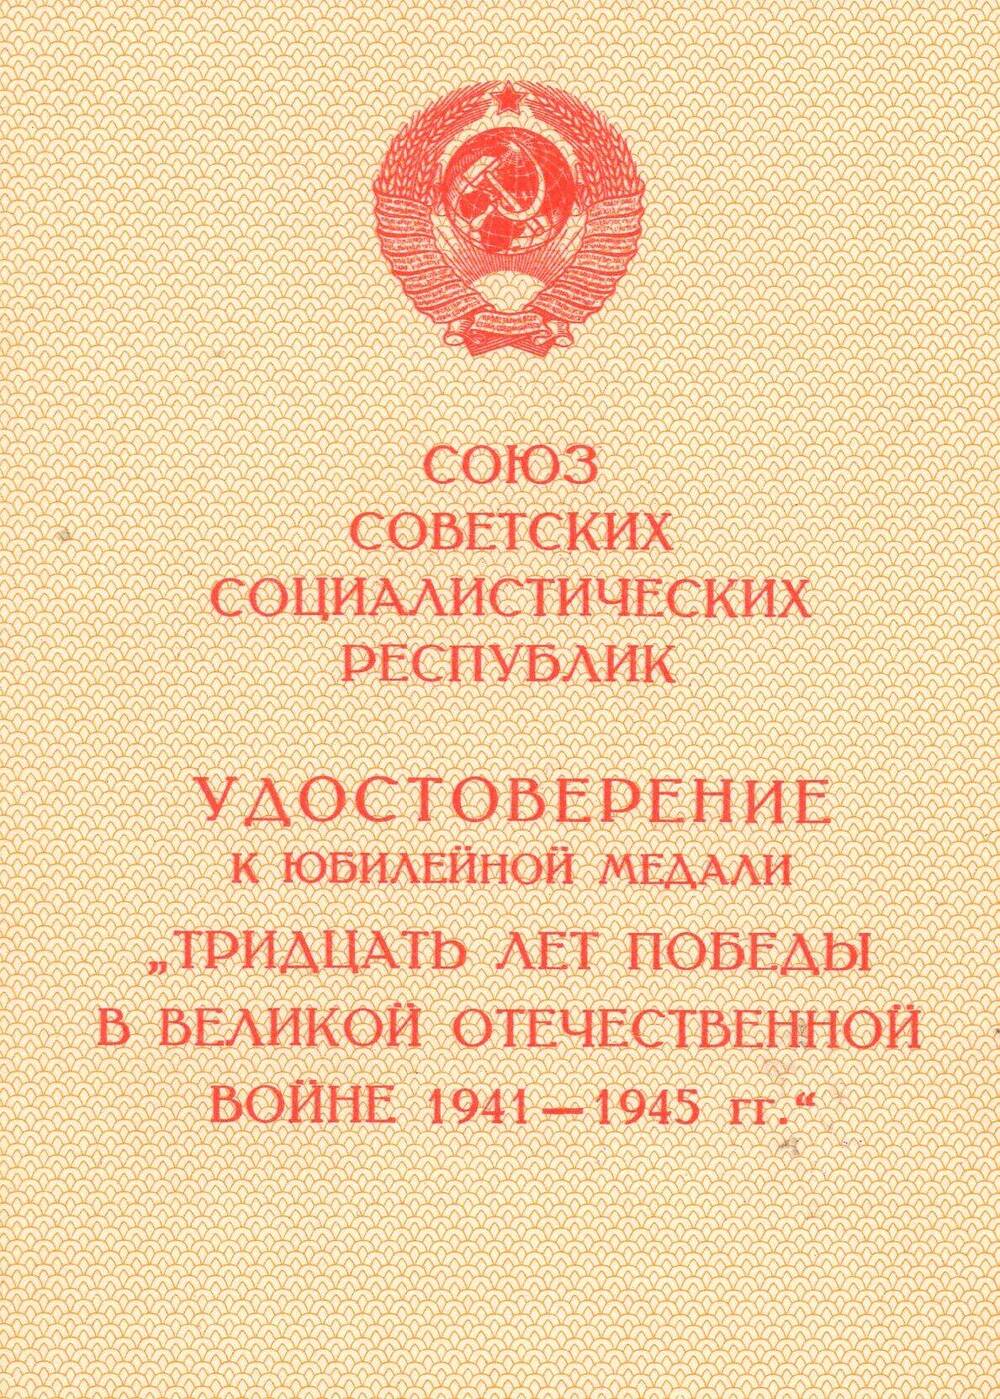 Удостоверение Осиповой А.П. к юбилейной медали Тридцать лет победы в Великой Отечественной войне 1941-1945 гг.